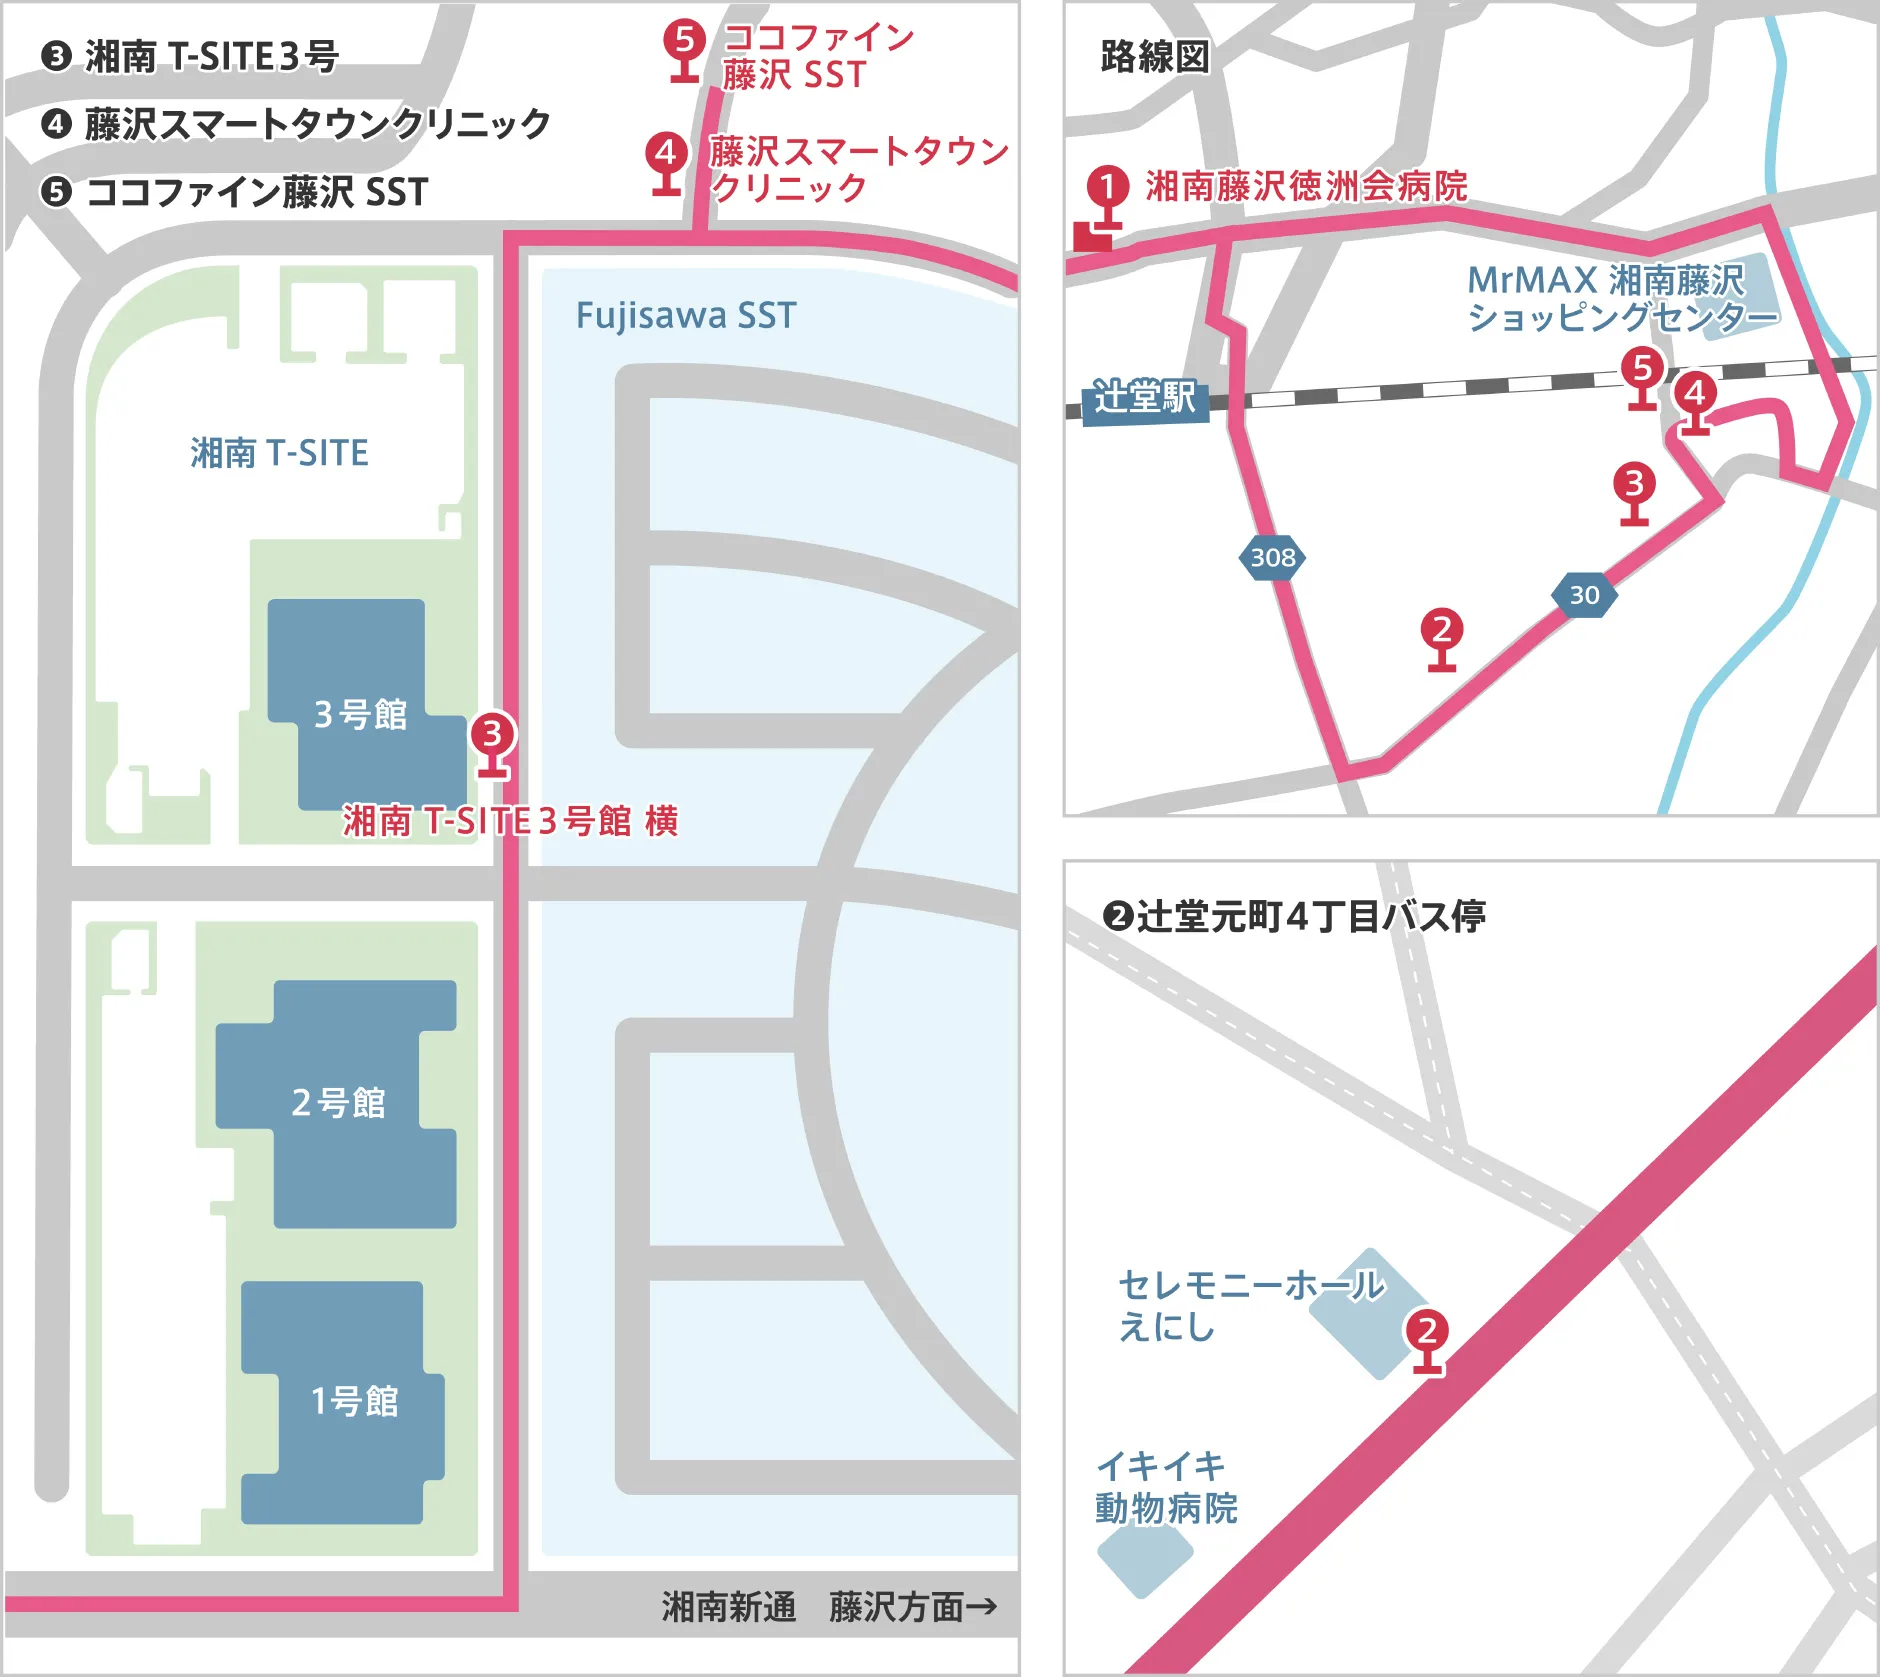 Fujisawa SST（湘南T-SITE）方面 路線図